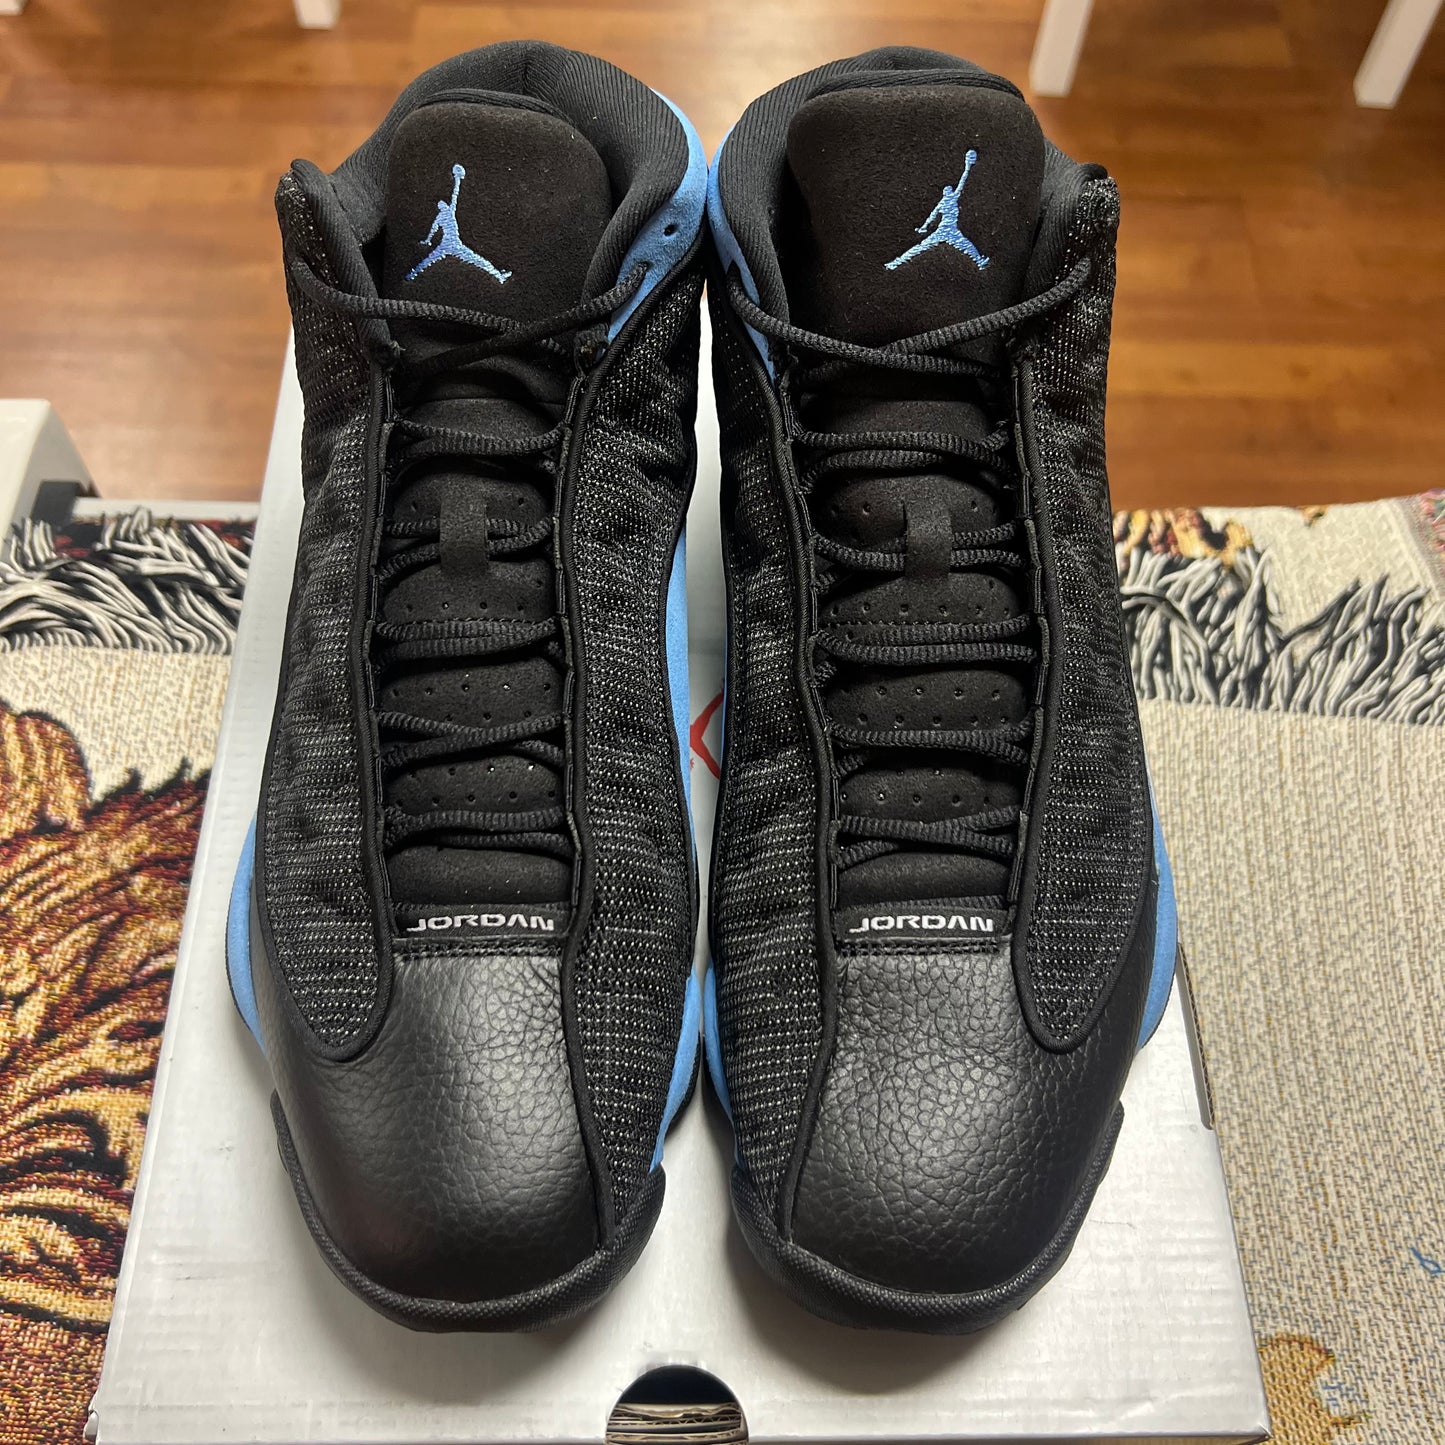 Jordan 13 Retro Black University Blue - Preloved